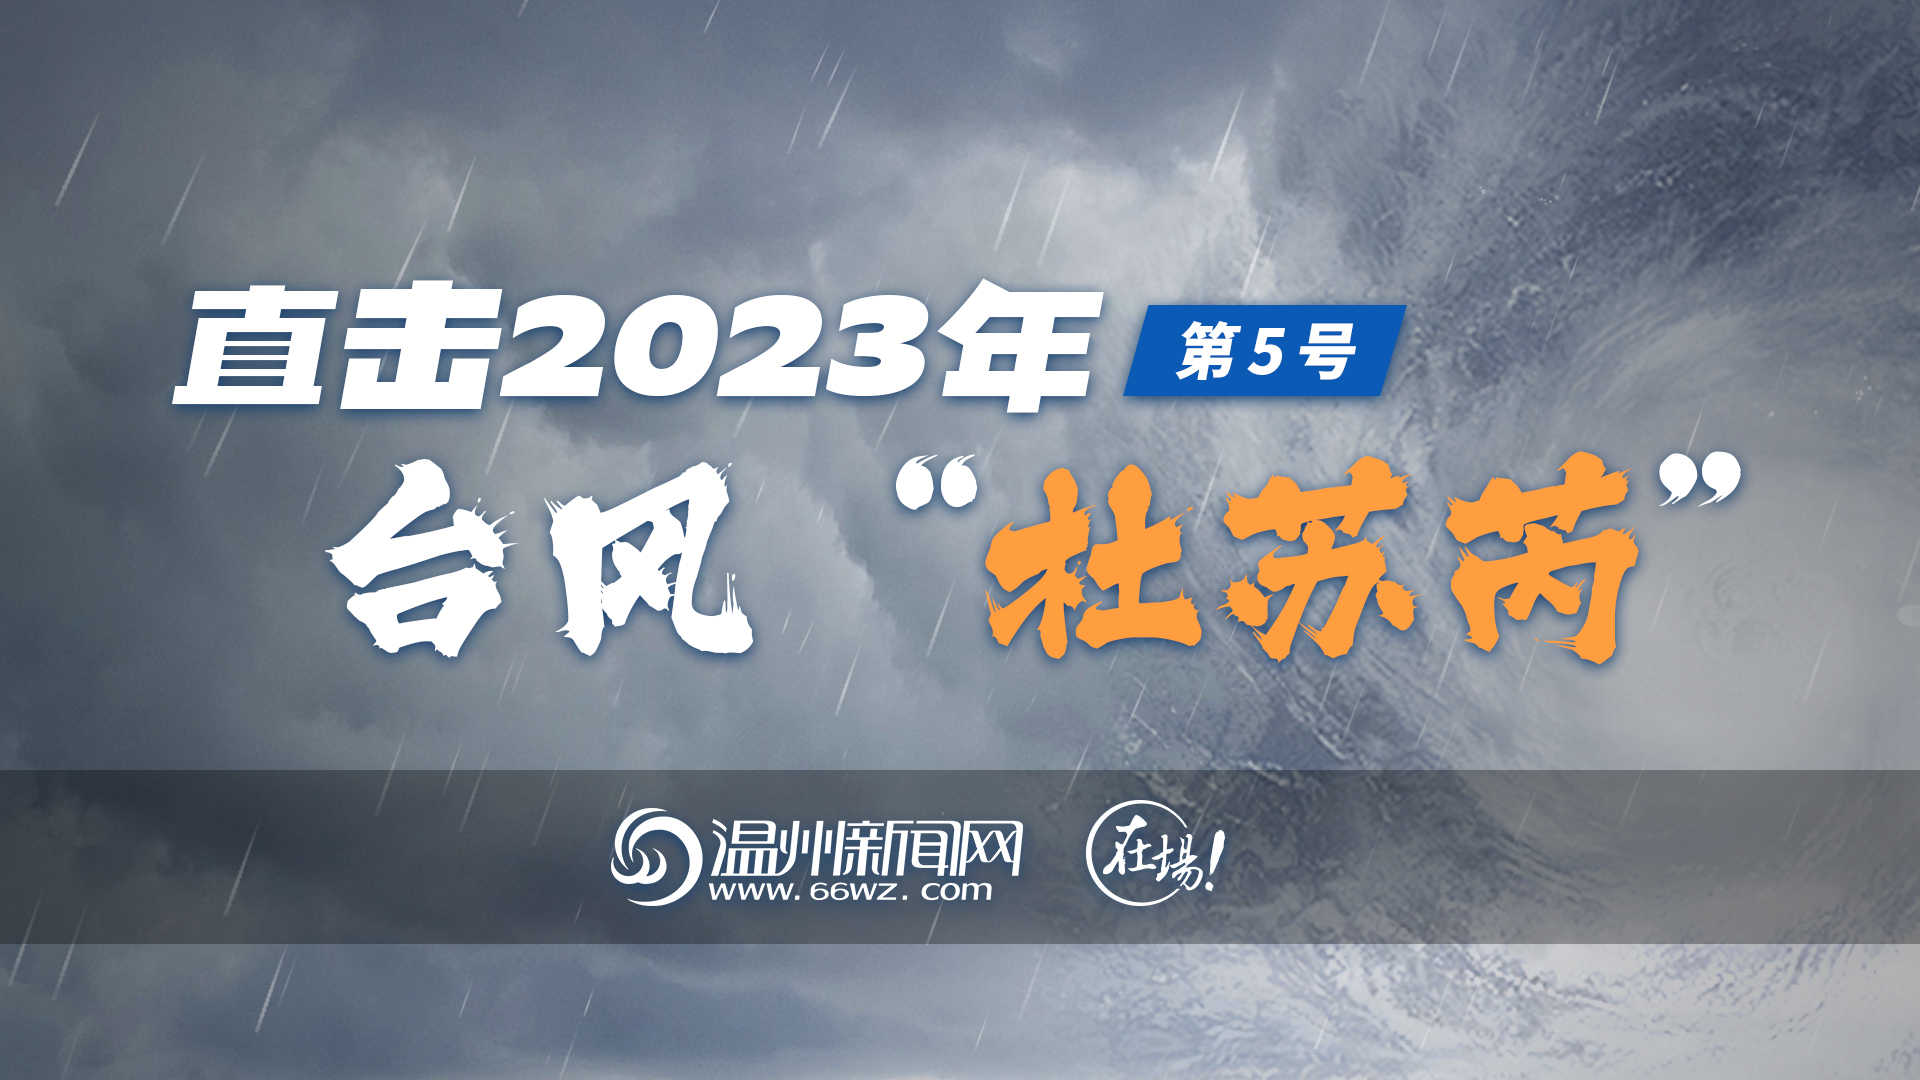 【专题】直击2023年第5号台风“杜苏芮”